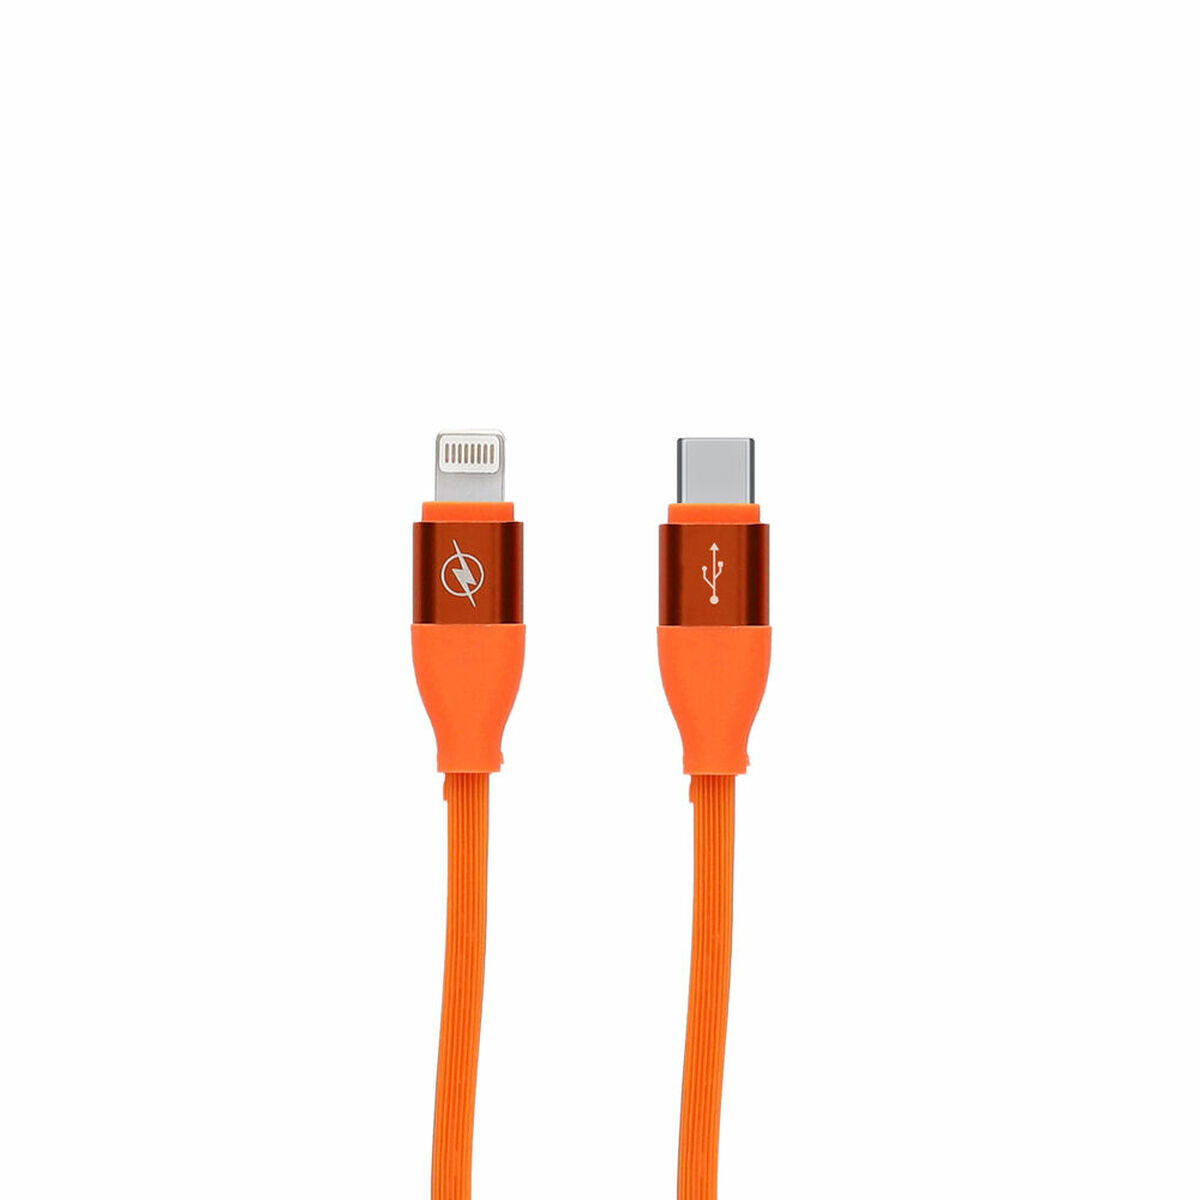 USB -kabel för iPad/iPhone -kontakt